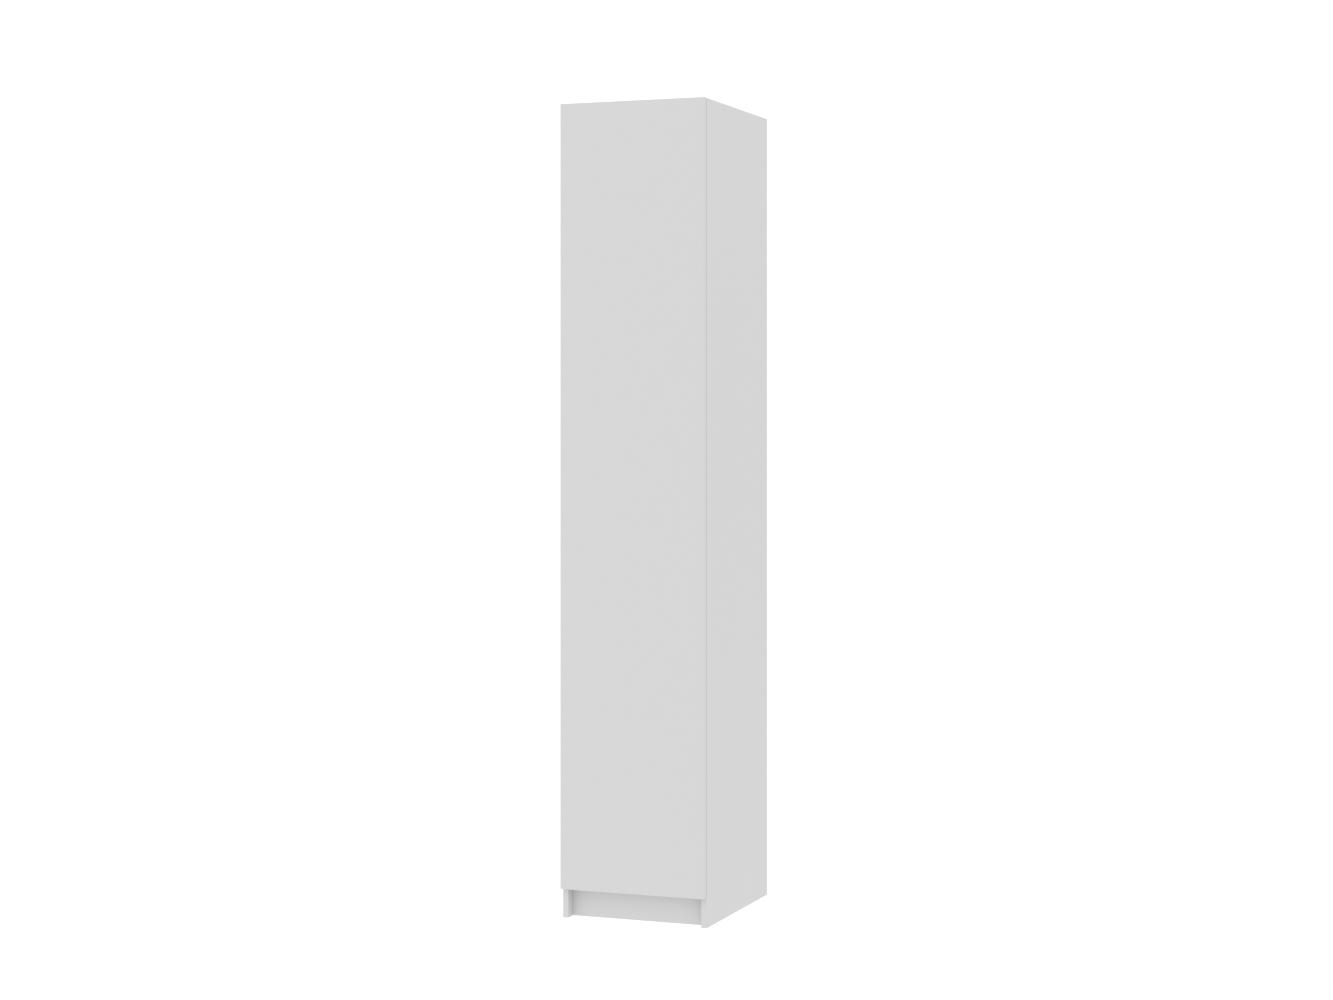 Распашной шкаф Пакс Форсанд 16 white ИКЕА (IKEA) изображение товара